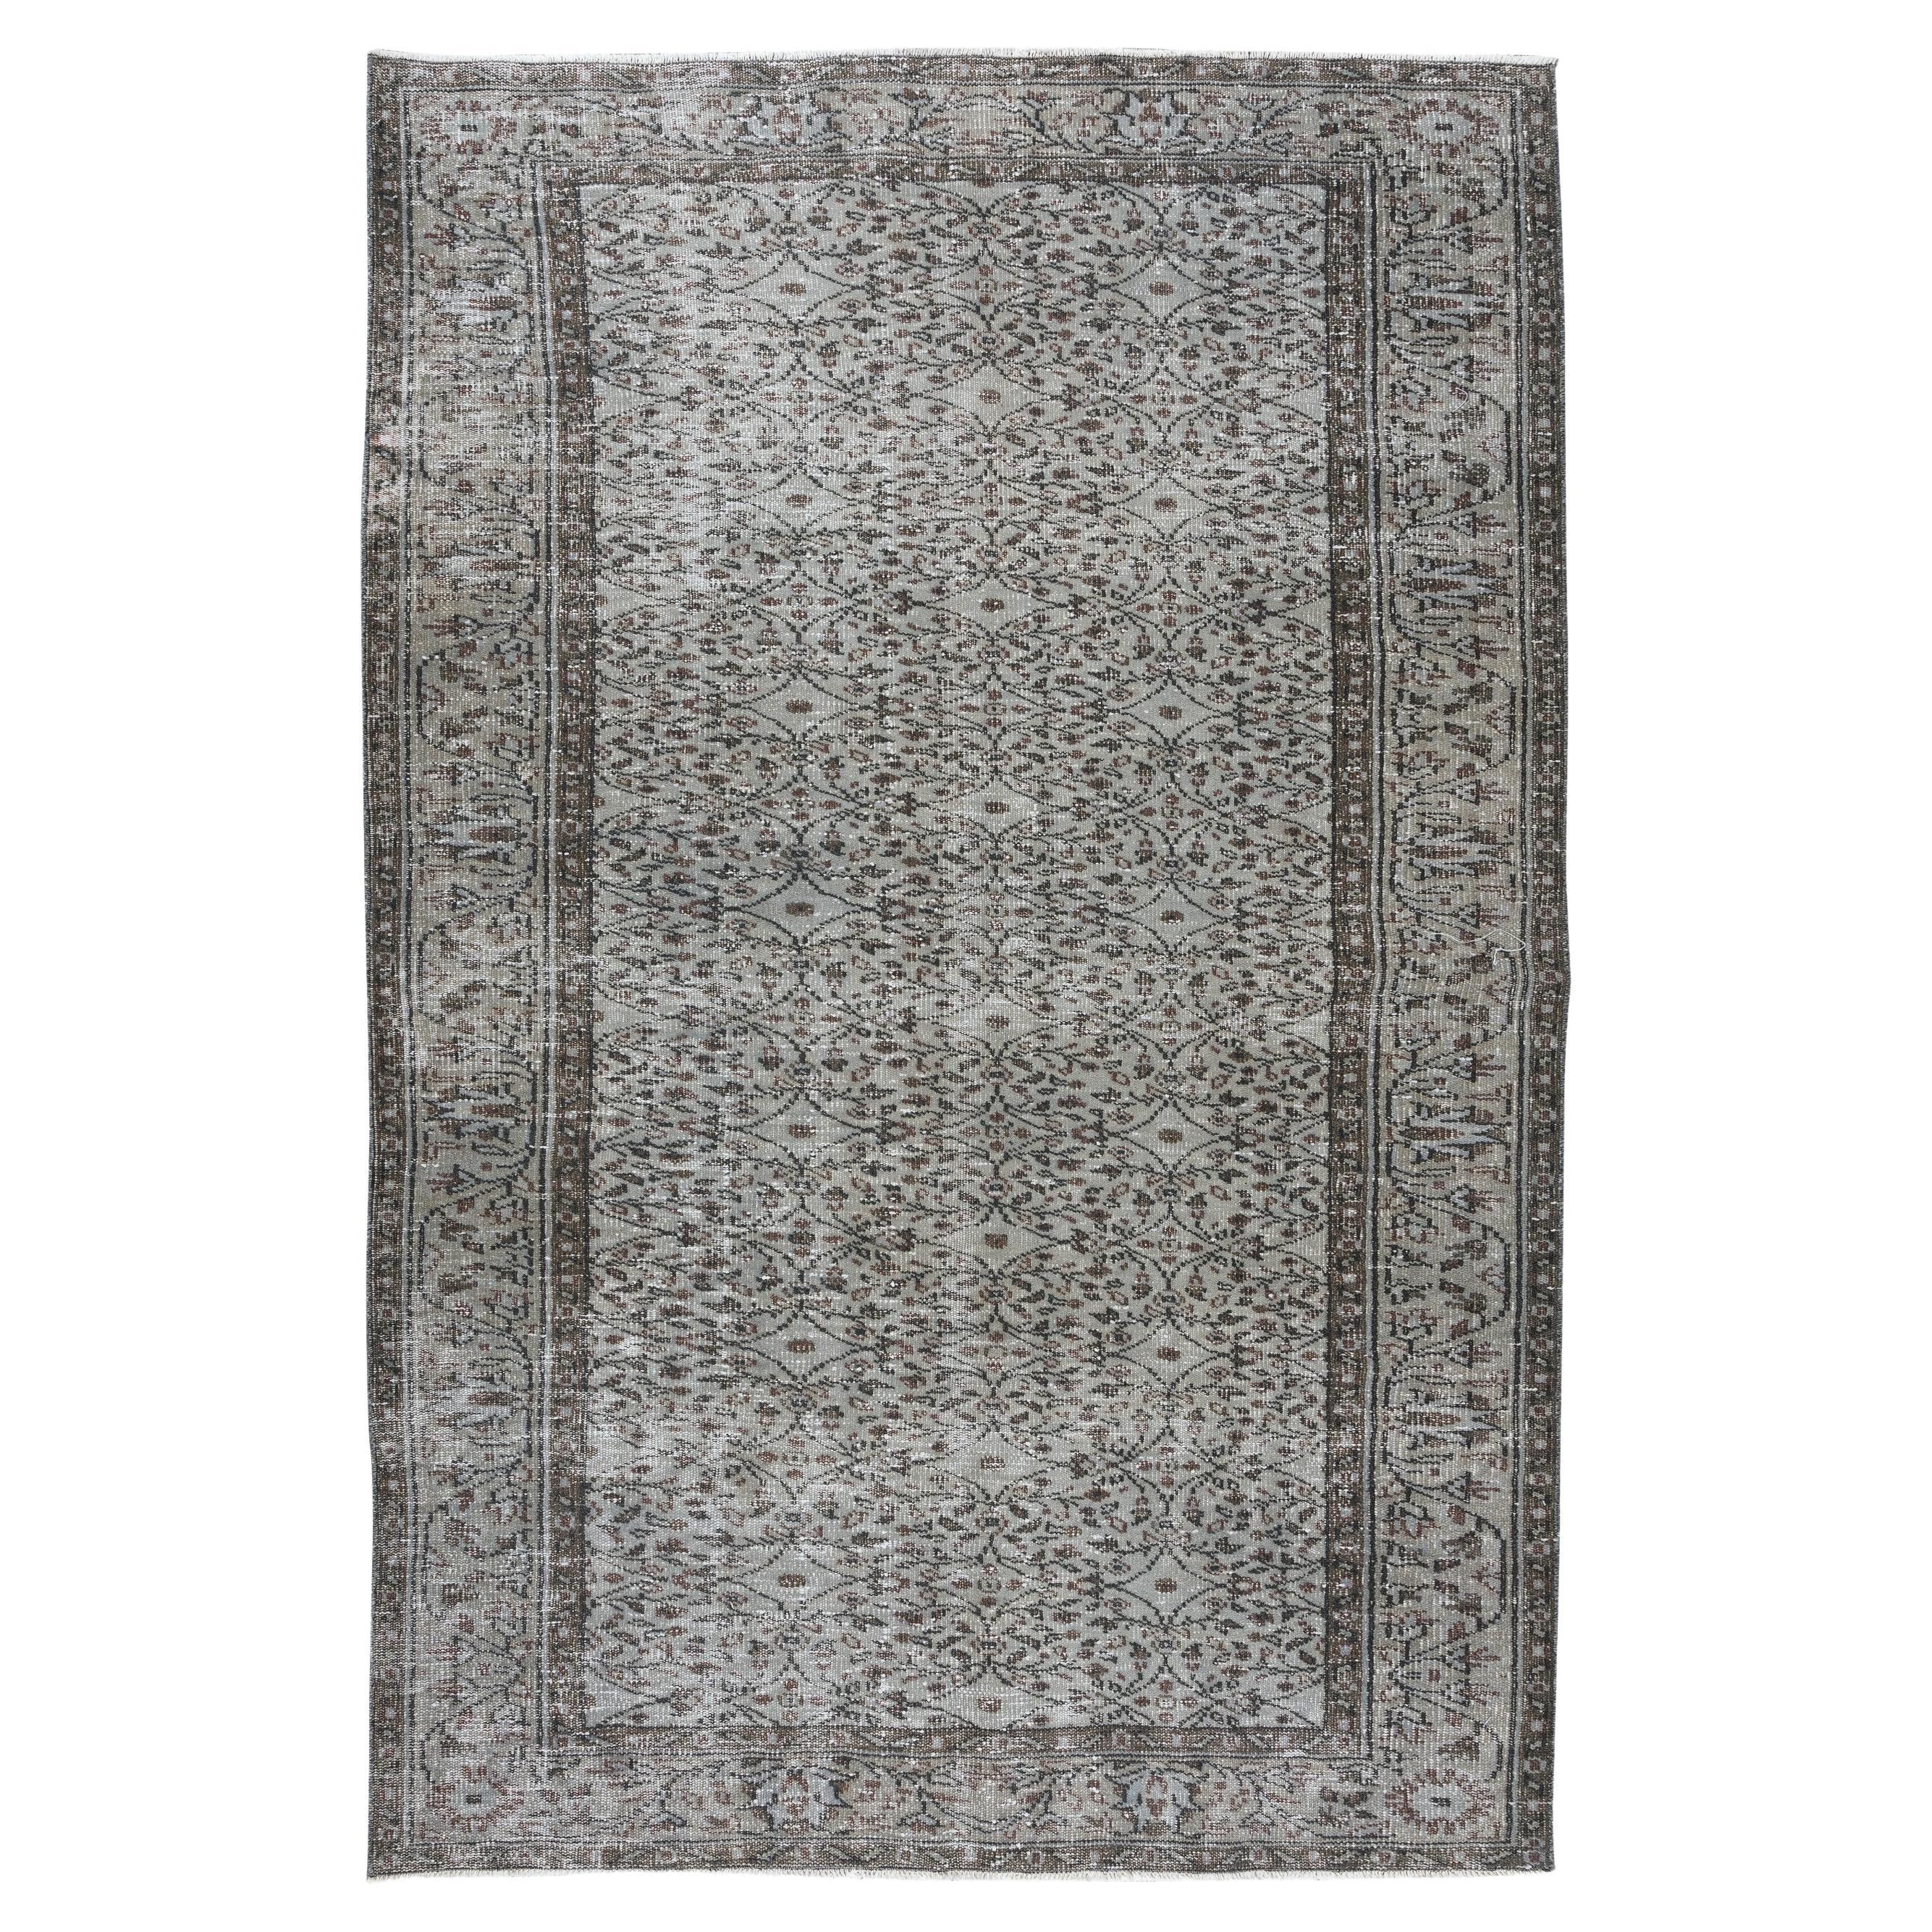 Moderner 5,5x8.6 Ft moderner geblümter Teppich in Grau, handgefertigter, upcycelter türkischer Wollteppich